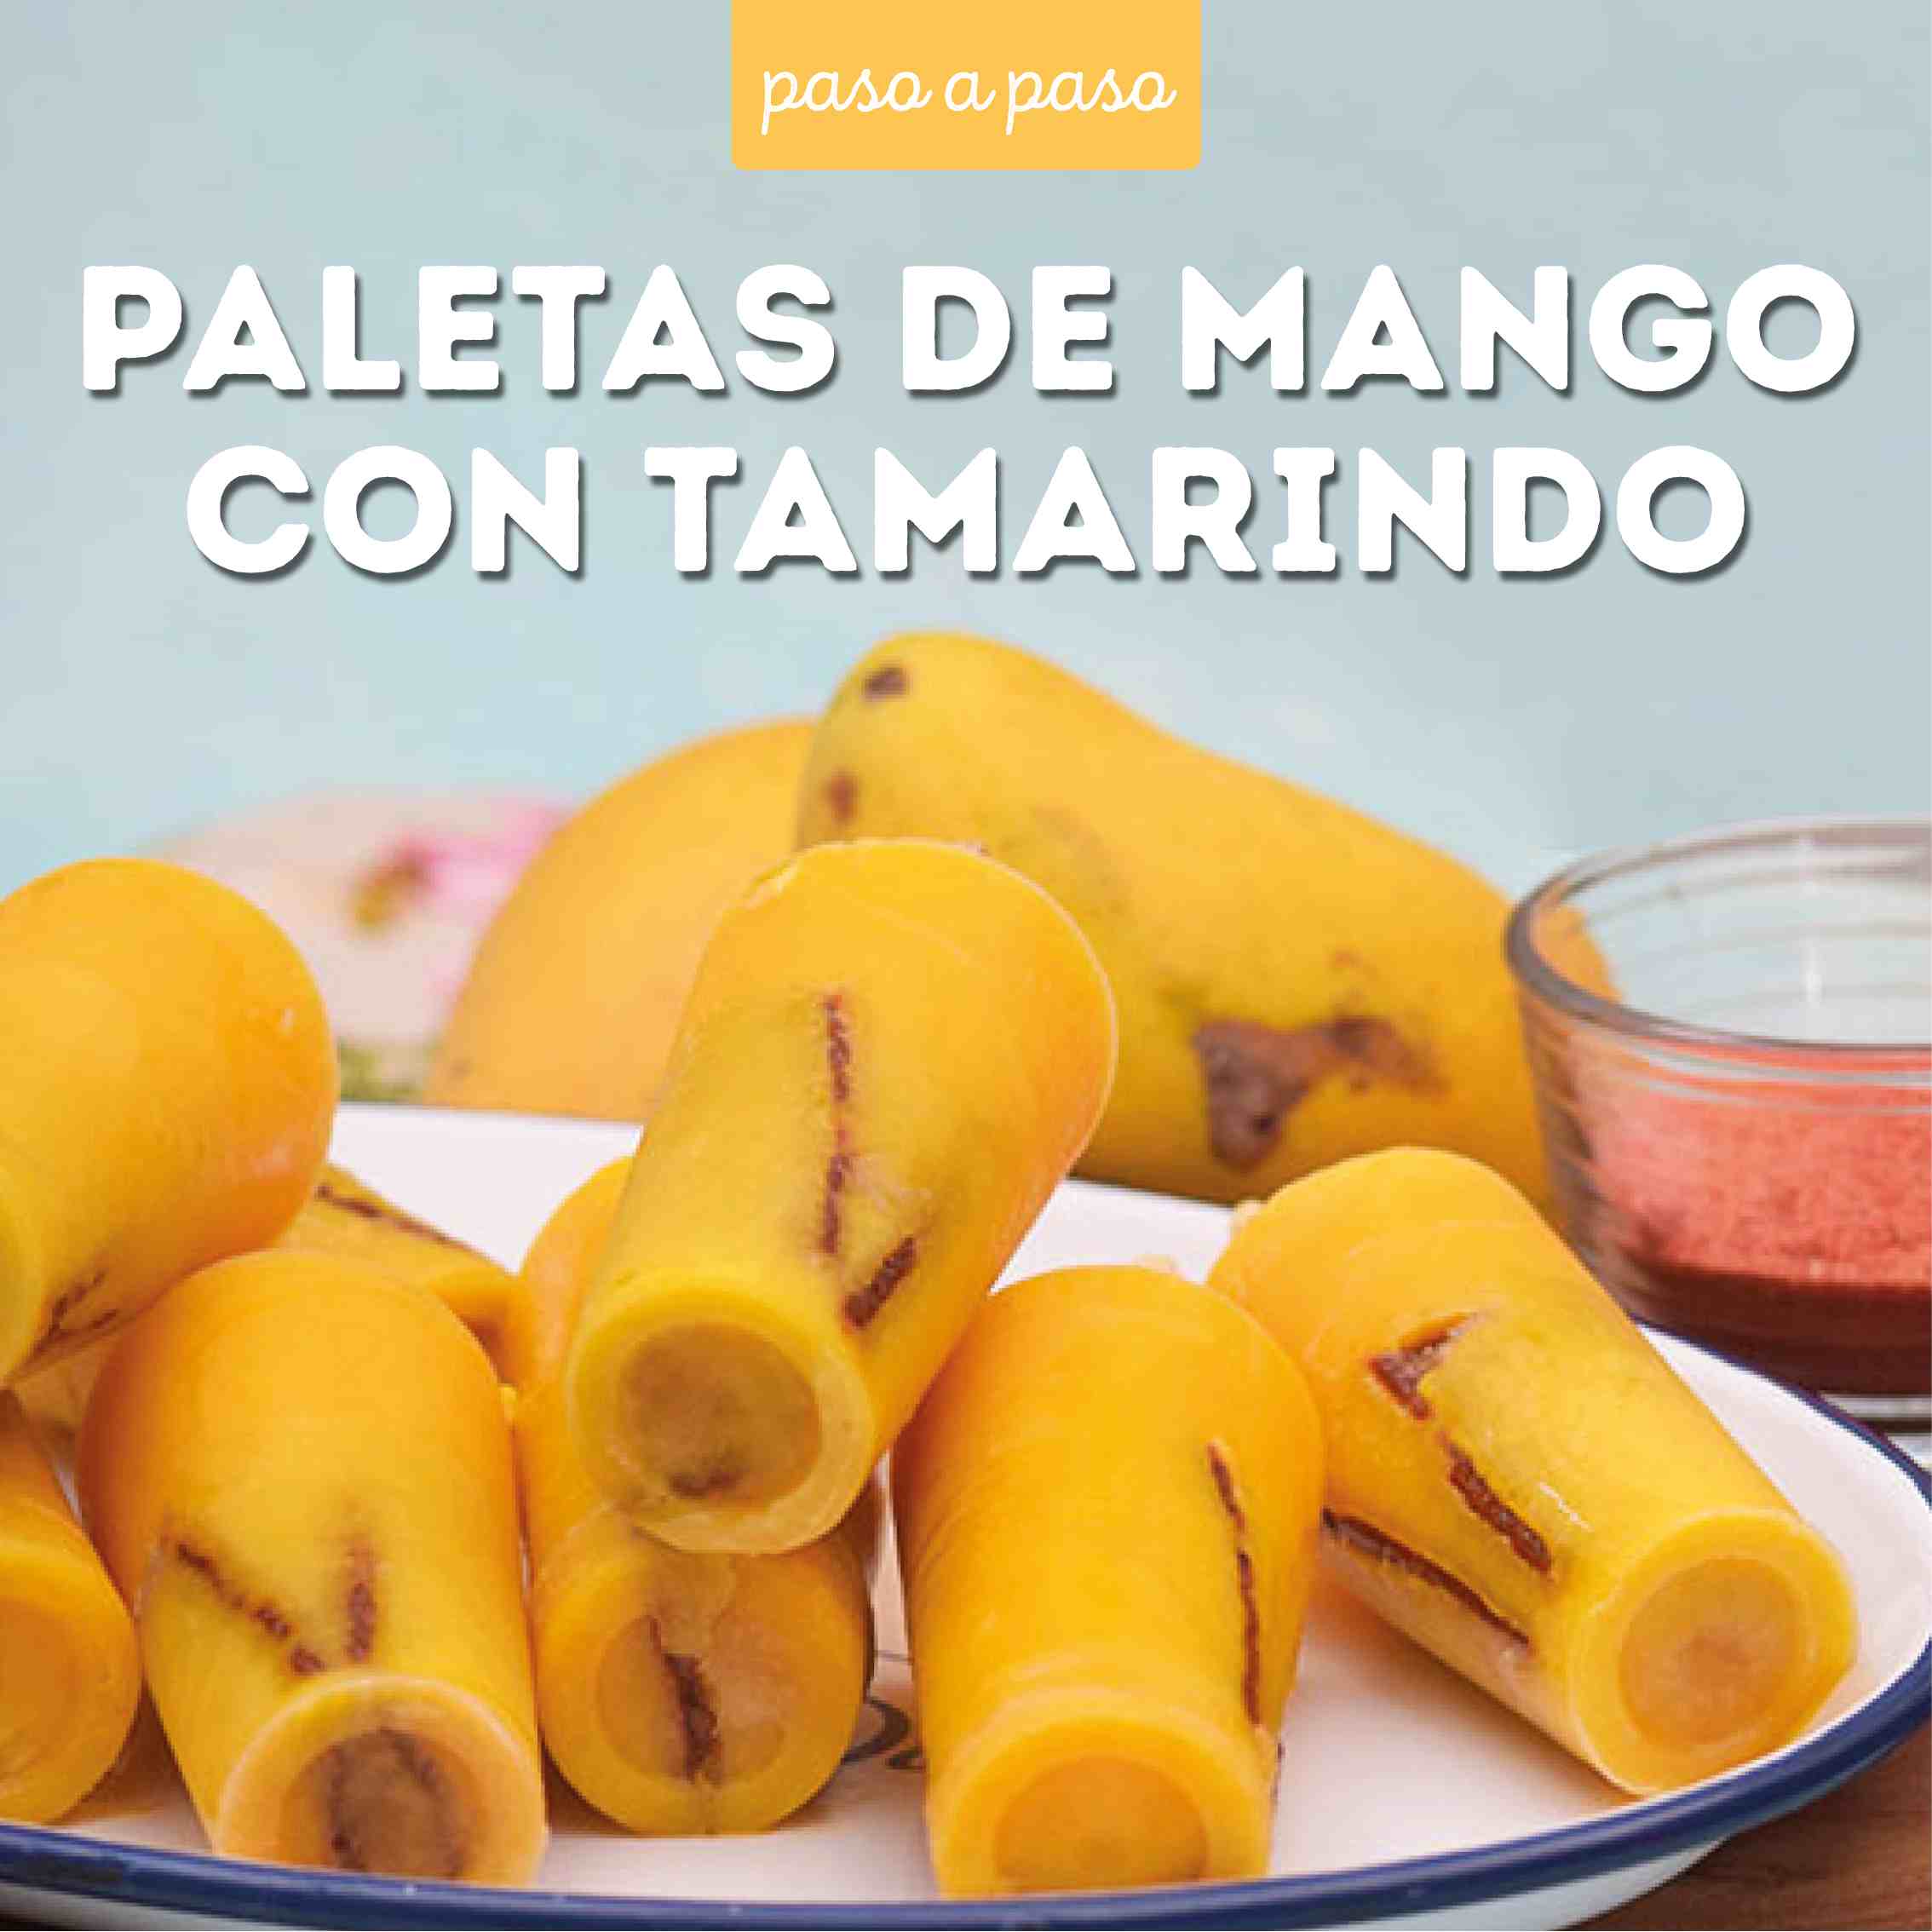 Paletas de mango con tamarindo